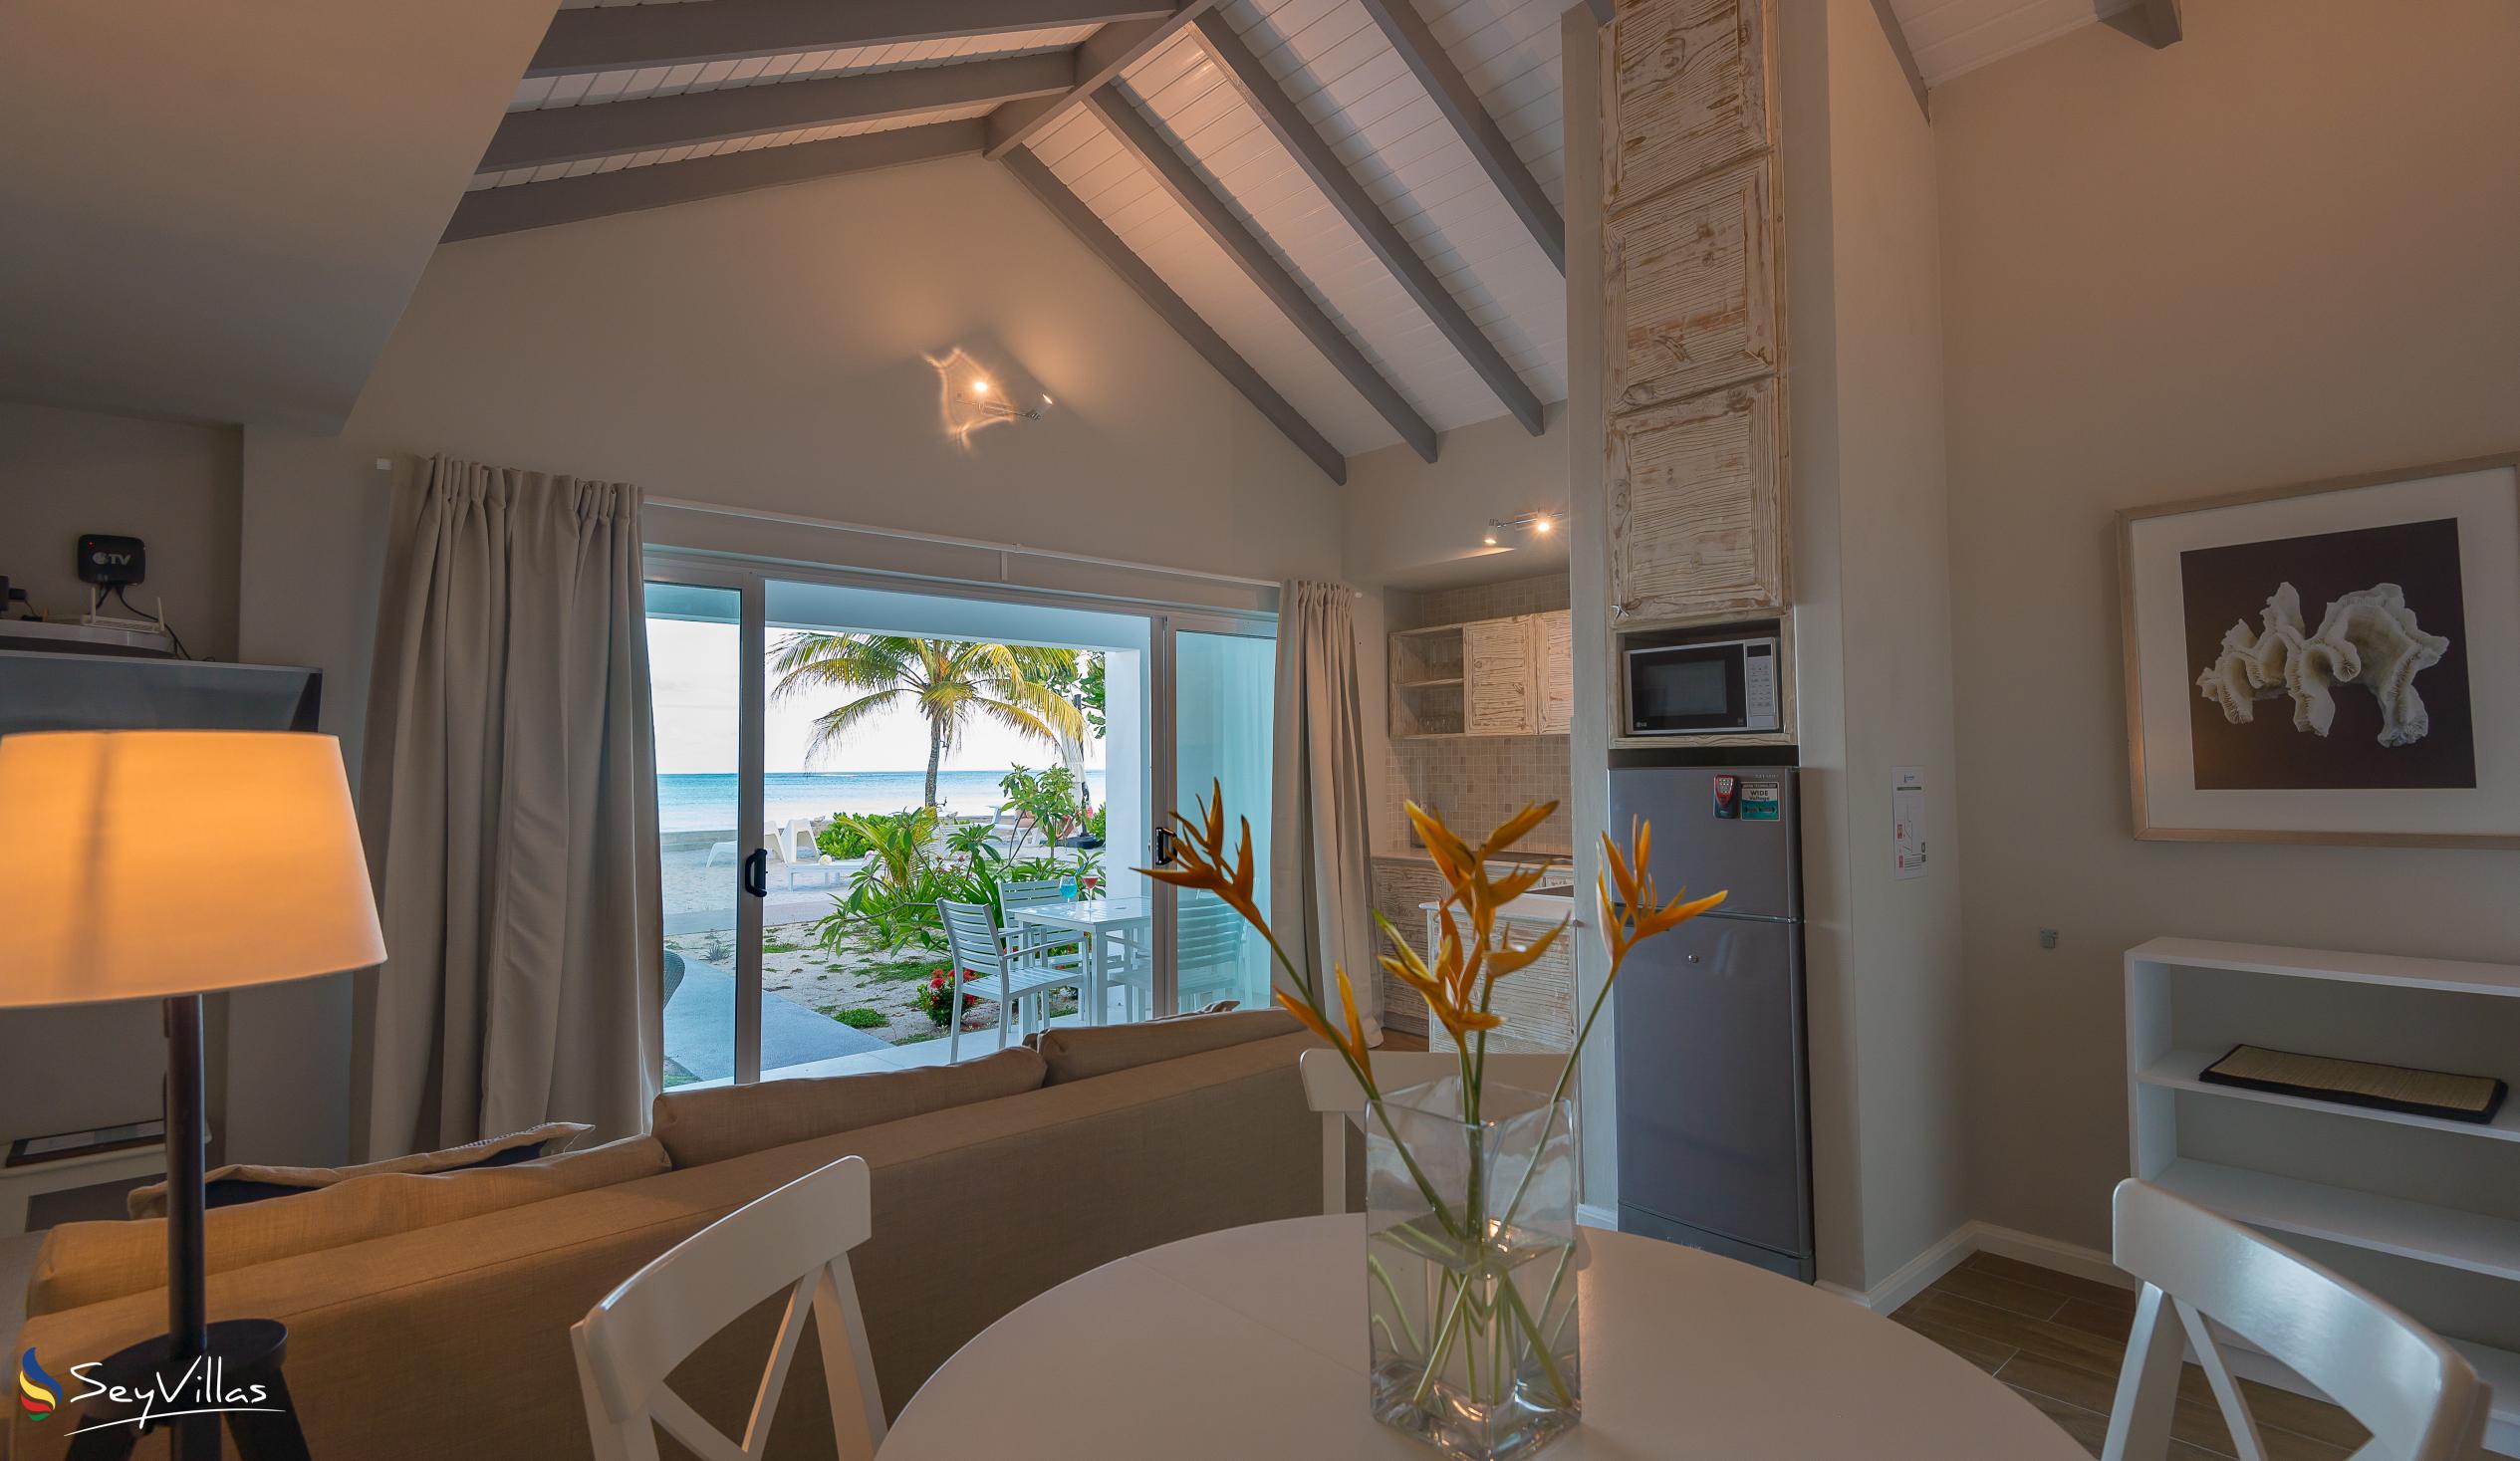 Foto 20: Le Nautique Luxury Beachfront Apartments - Appartement Beachfront 2 Chambres - Mahé (Seychelles)